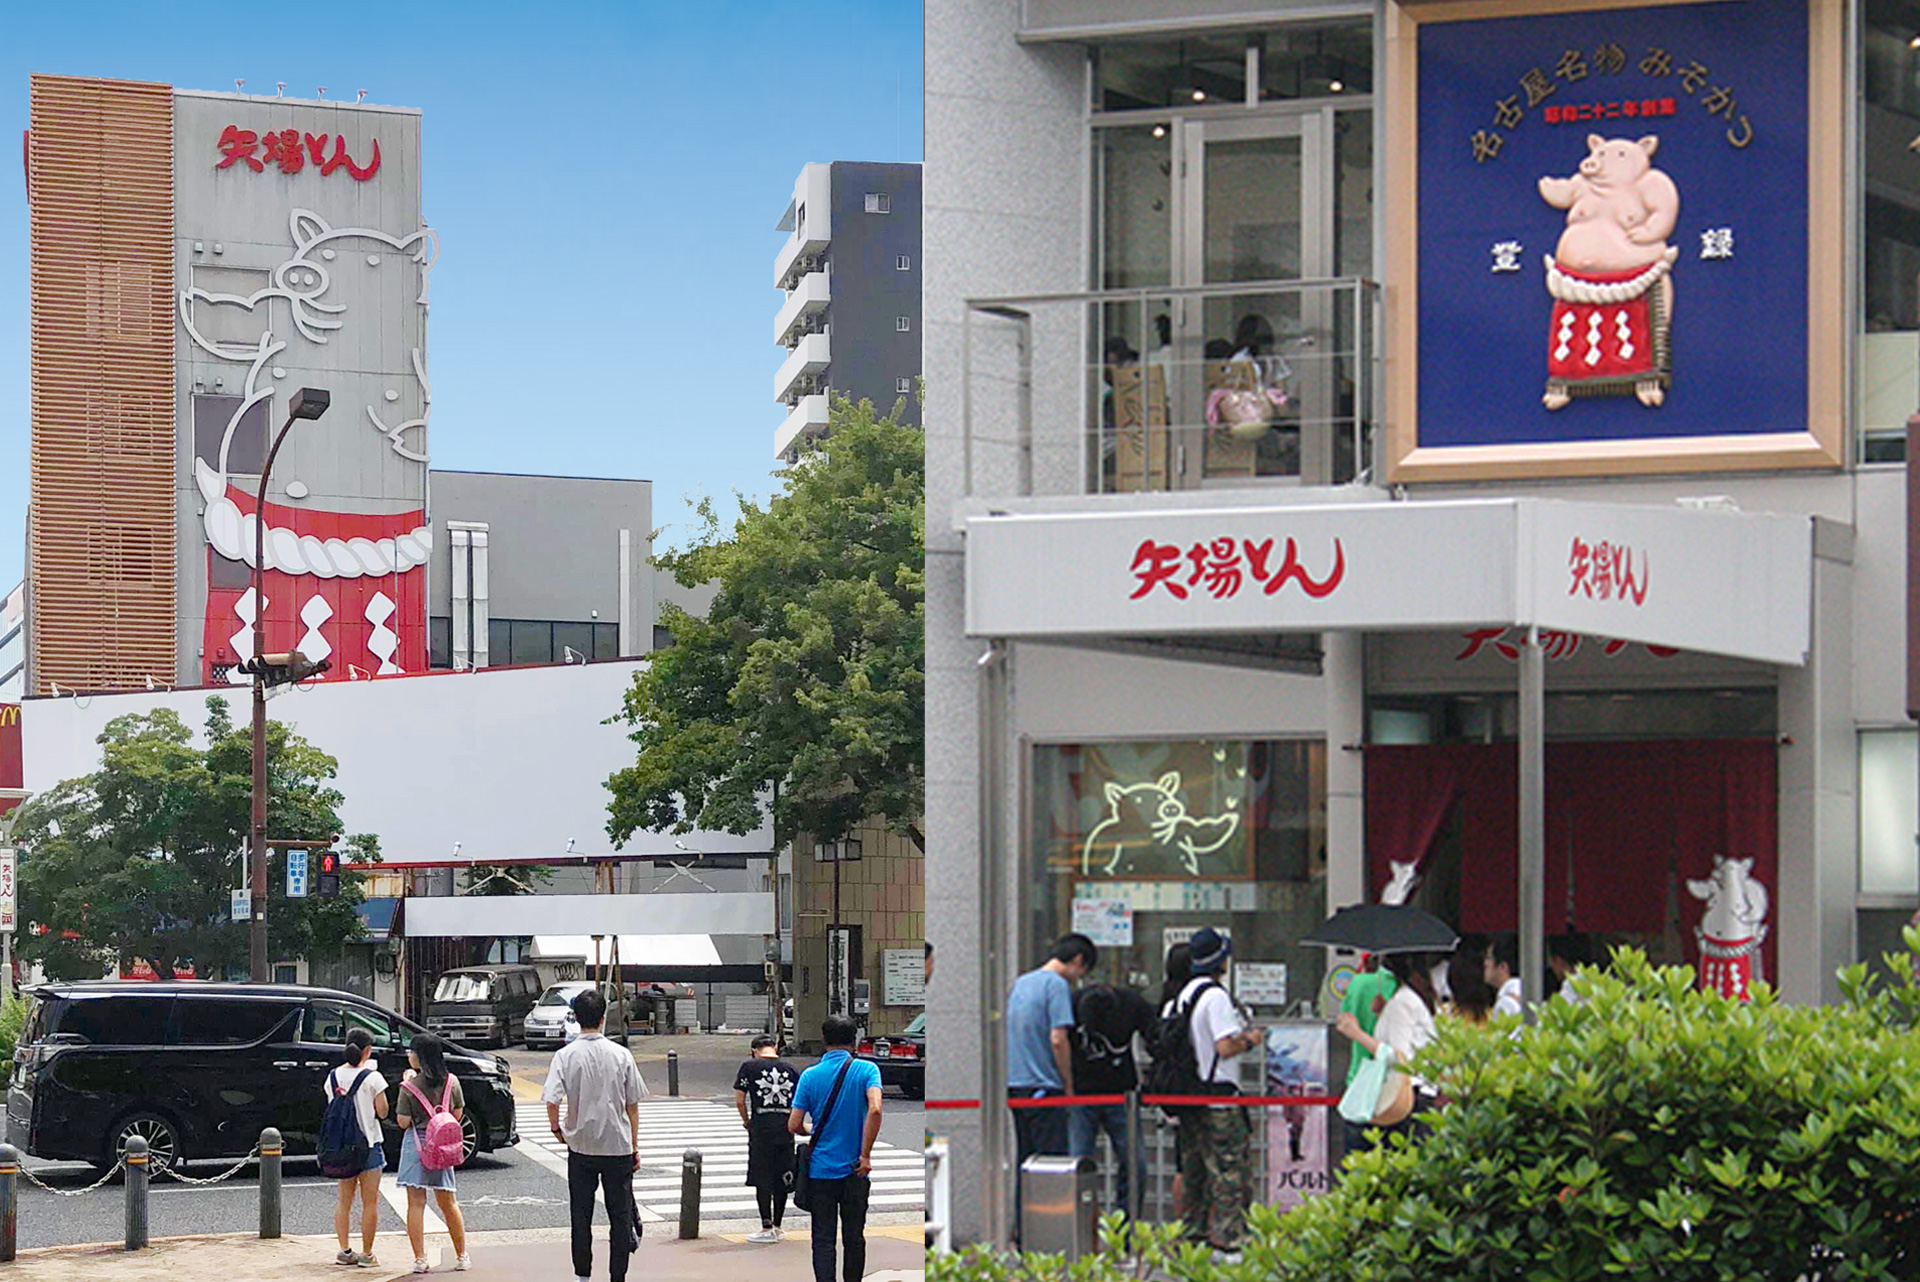 “飲食店のデザイン設計なら愛知県名古屋のスーパーボギープランニング”